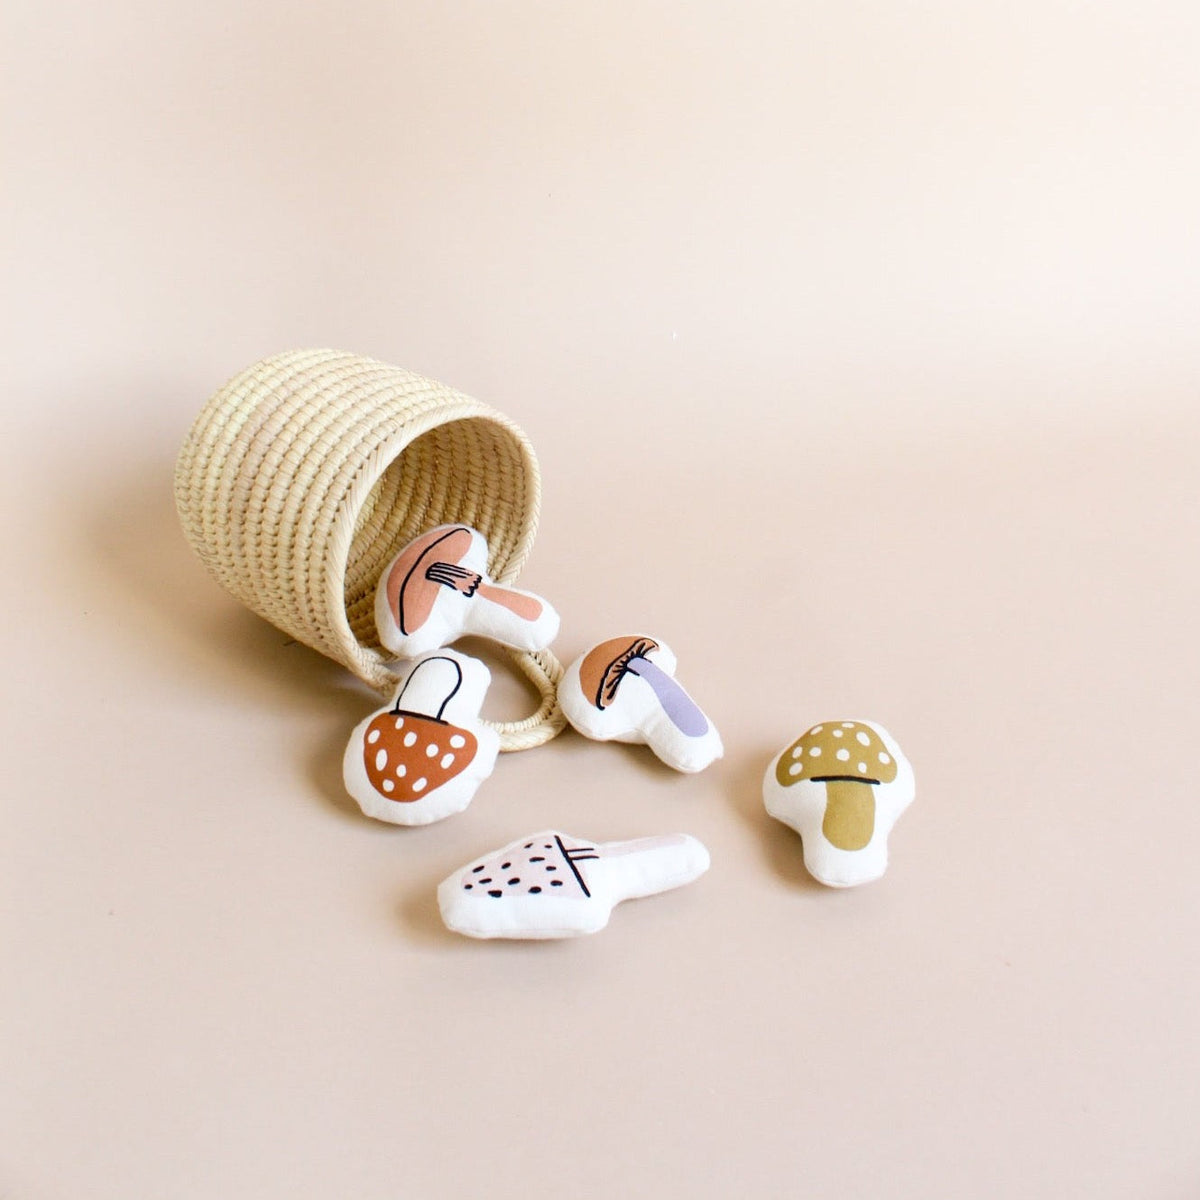 Mini Mushroom Basket Toy Set